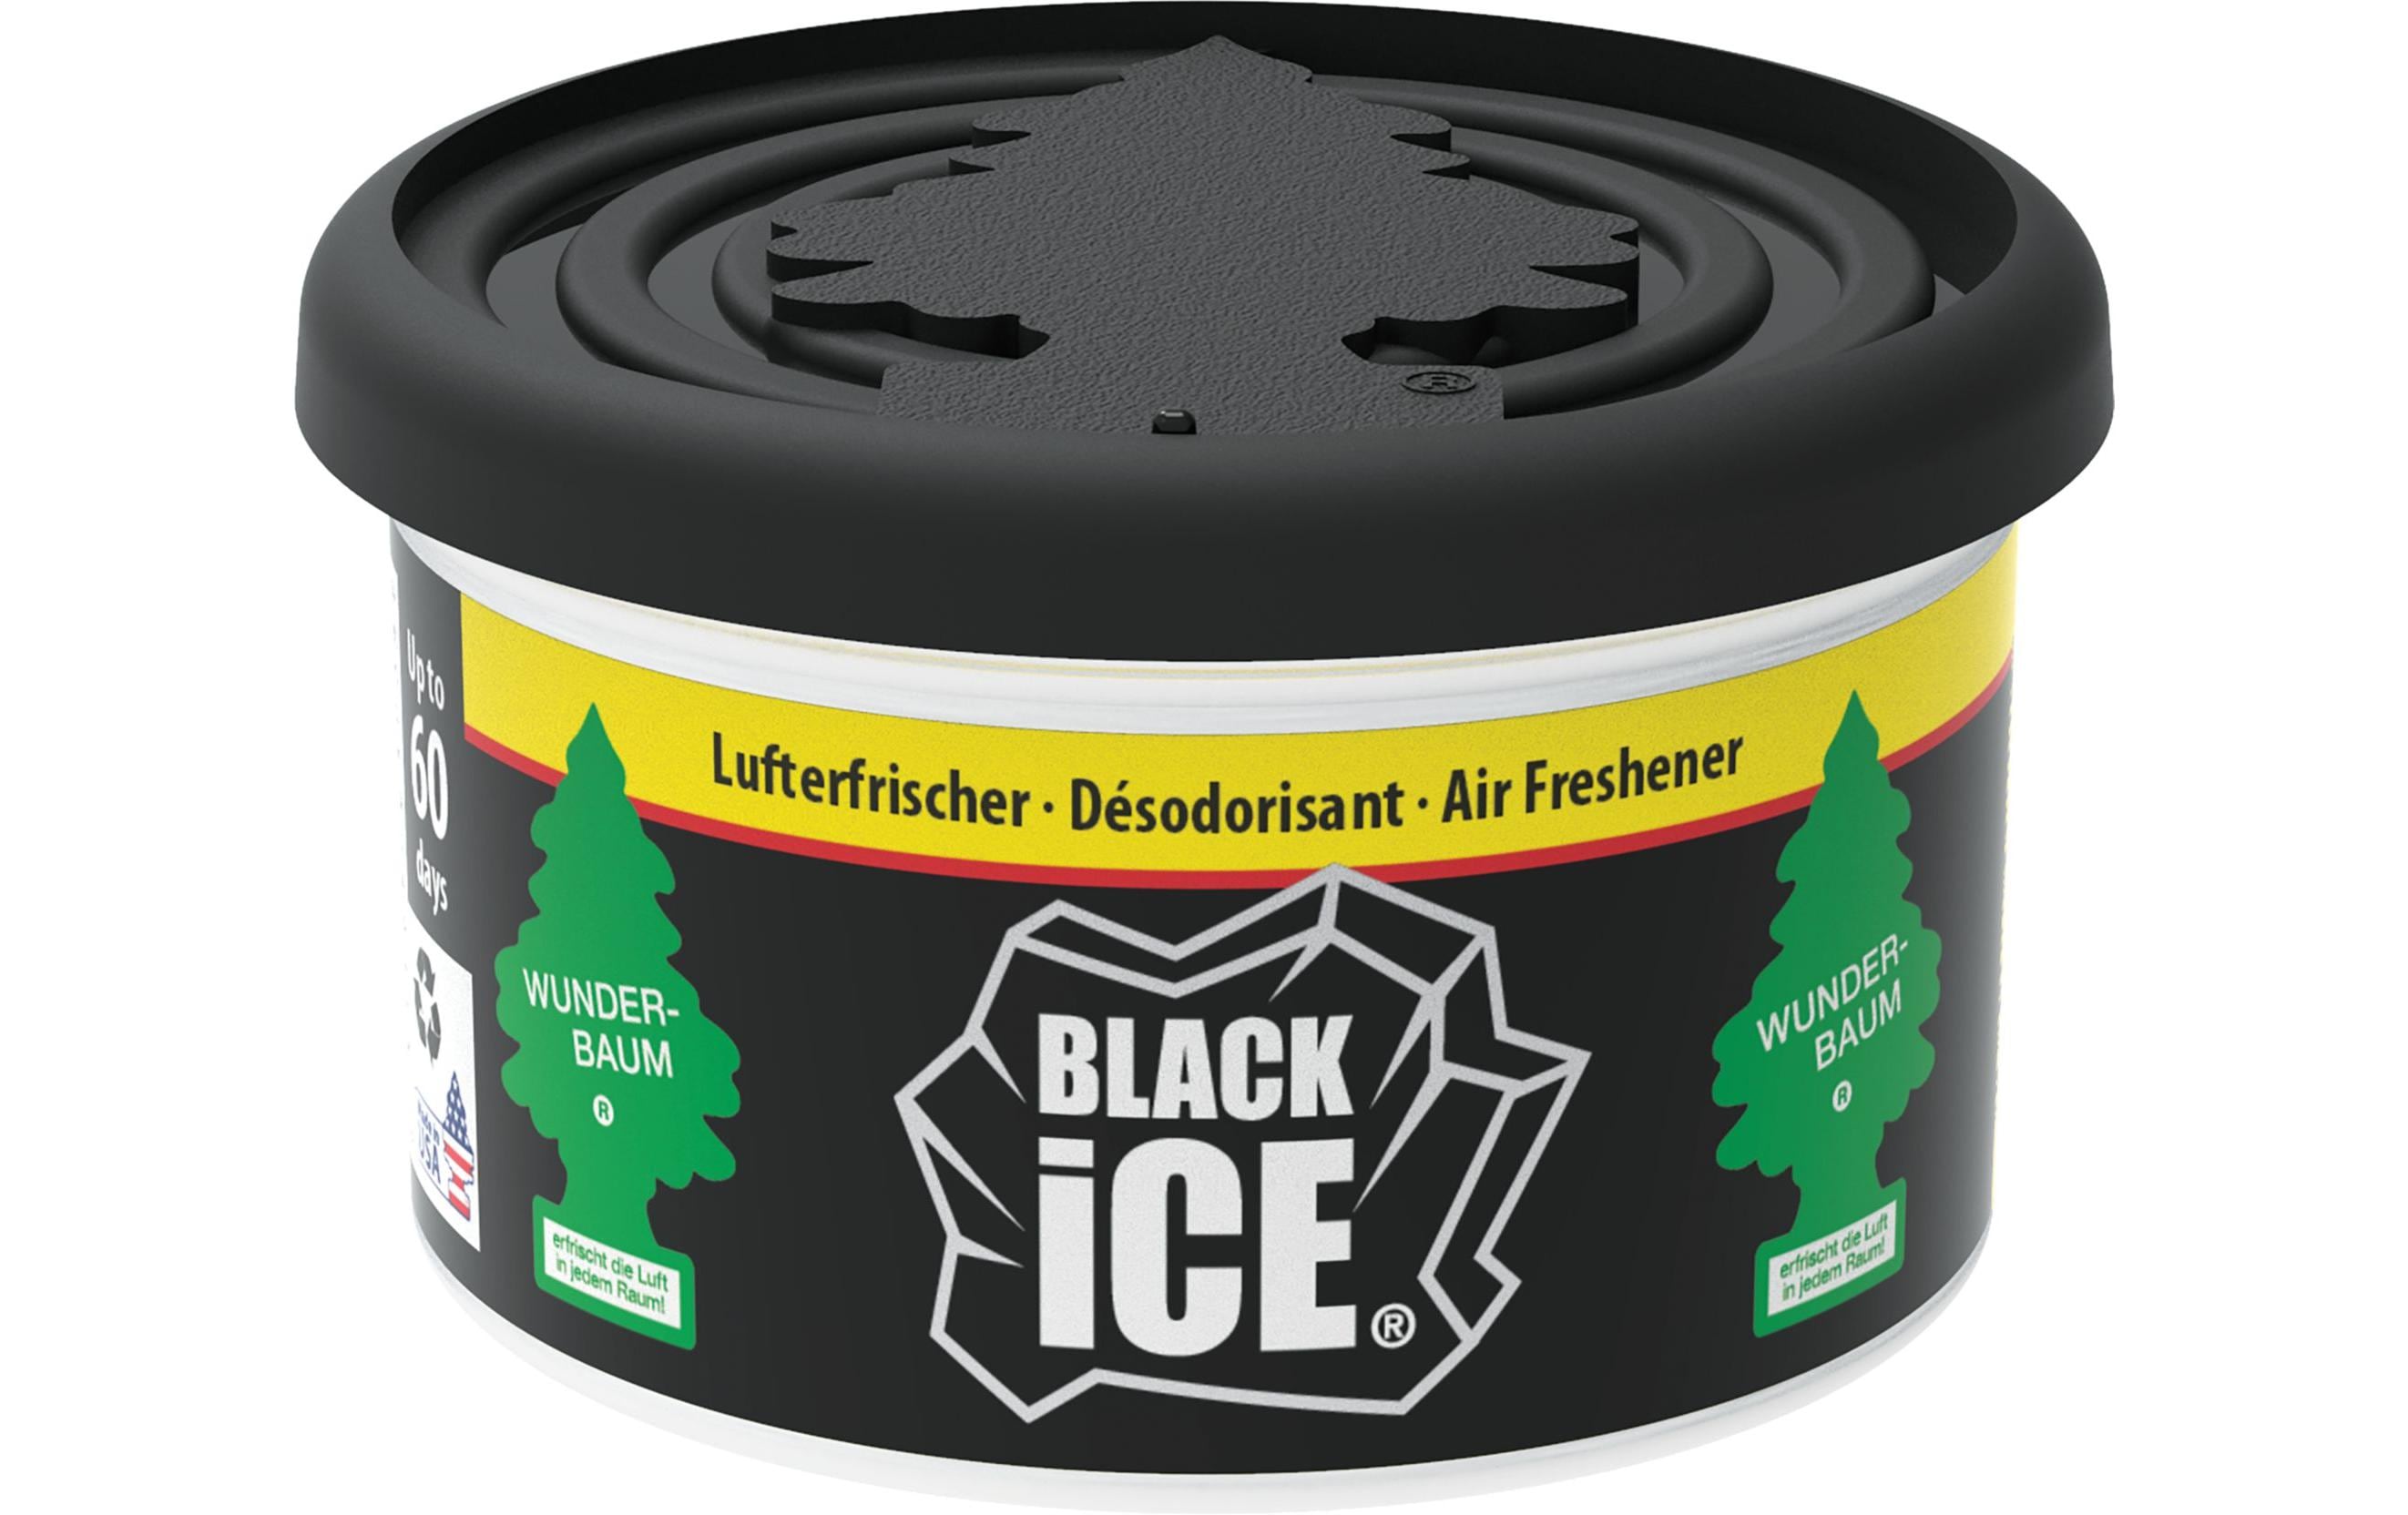 Wunderbaum Auto-Duftdose Black Ice